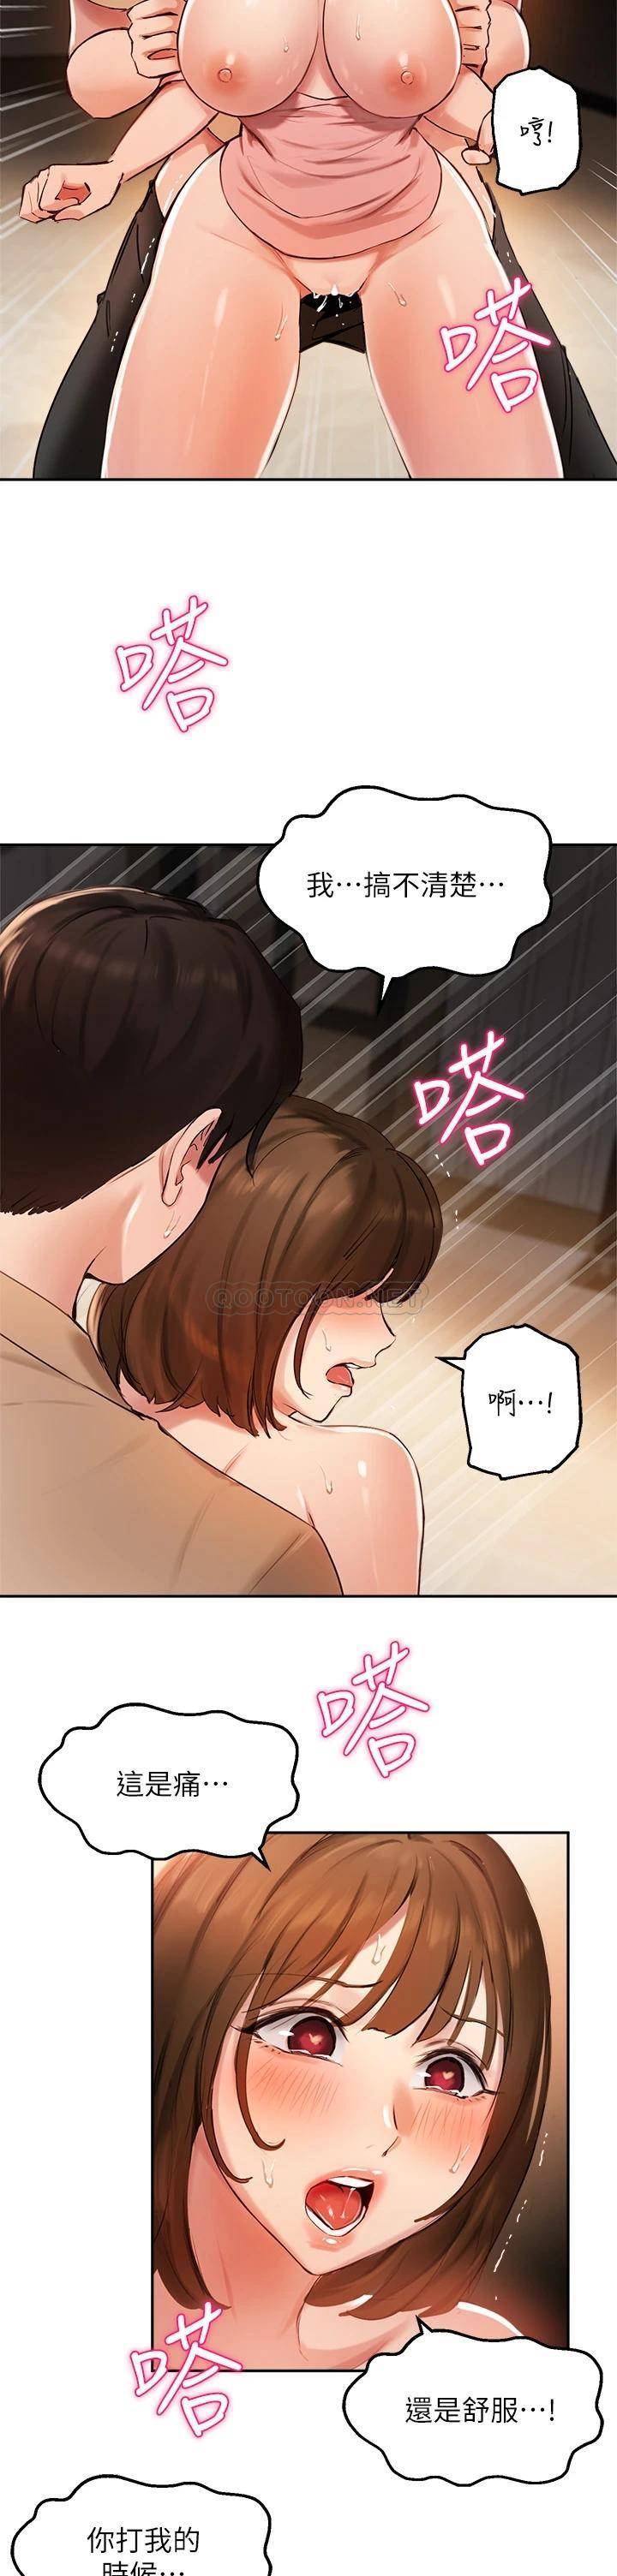 韩国污漫画 指導女大生 第39话我想成为你的固炮 22